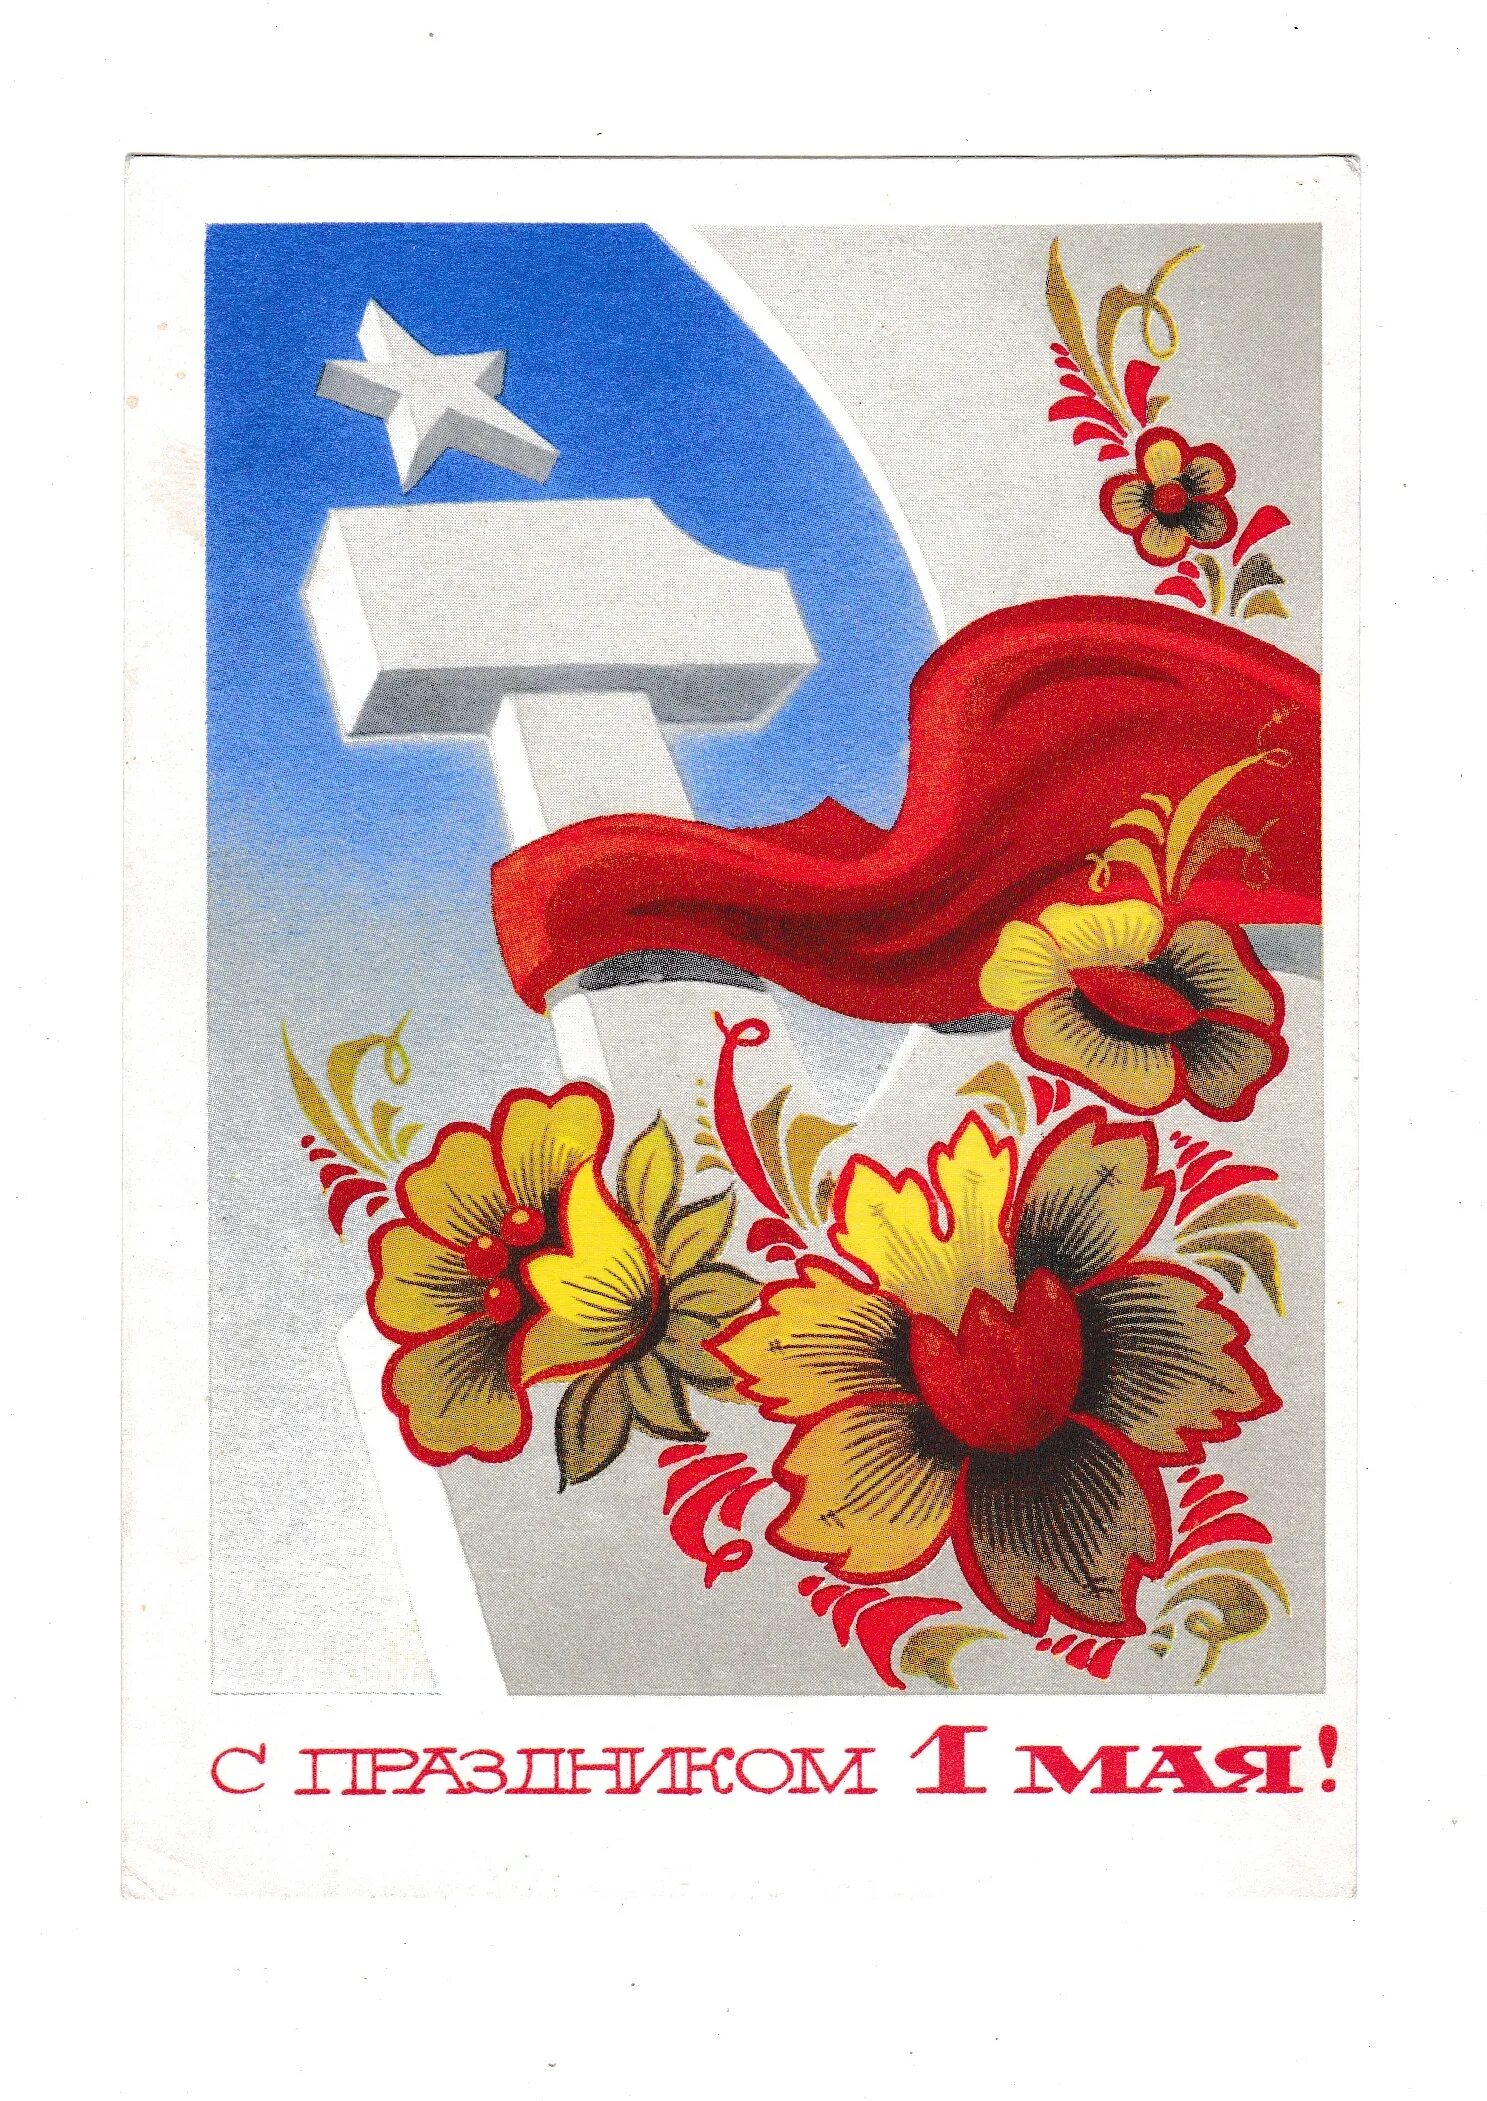 Старые открытки с 1 мая. Советские открытки 1 ма. Советские открытки с 1 мая. Первое мая советские открытки. Советские праздничные открытки.